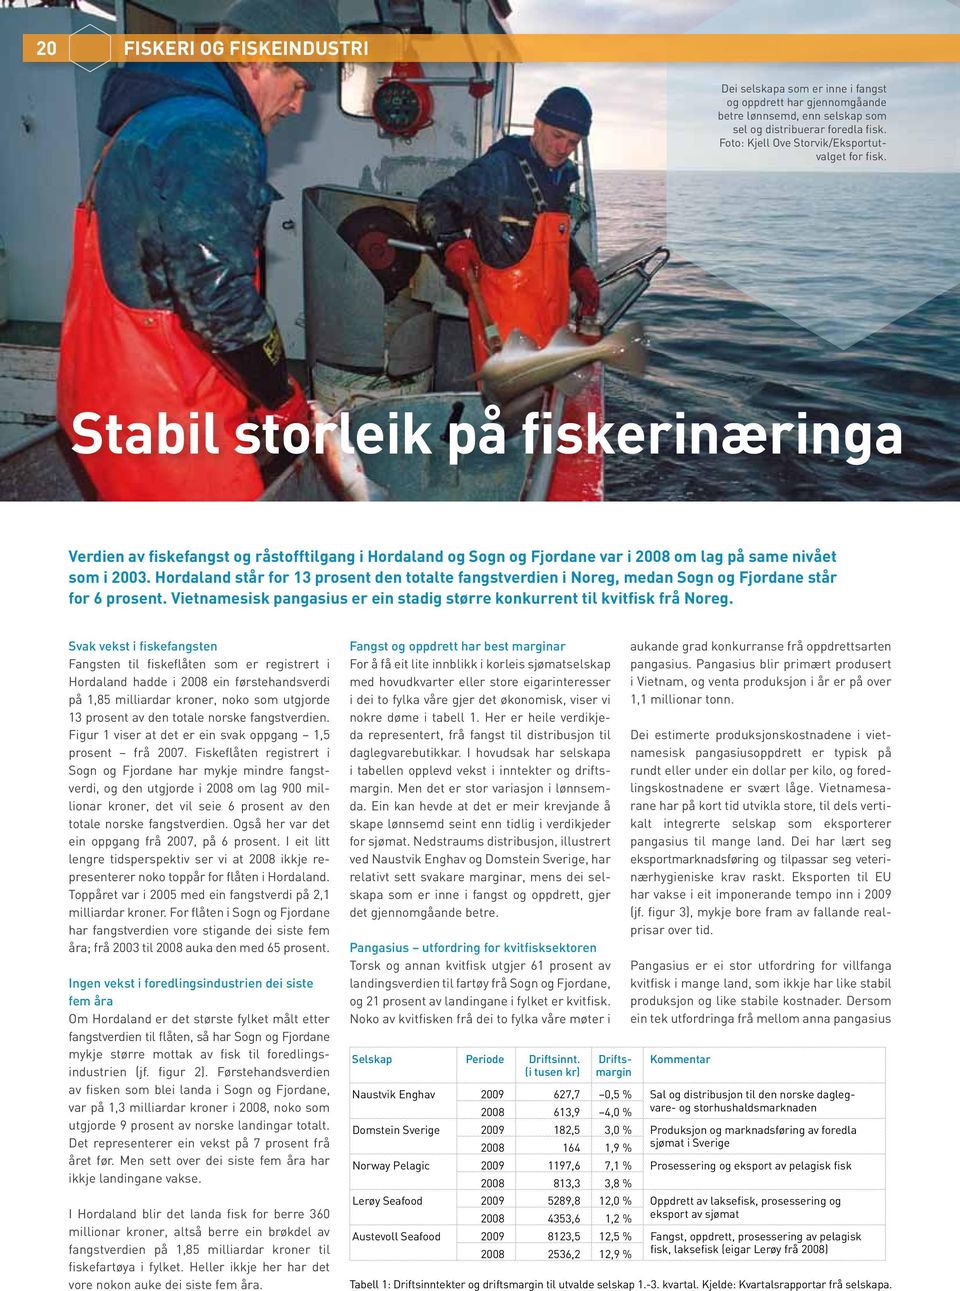 Hordaland står for 13 prosent den totalte fangstverdien i Noreg, medan Sogn og Fjordane står for 6 prosent. Vietnamesisk pangasius er ein stadig større konkurrent til kvitfisk frå Noreg.